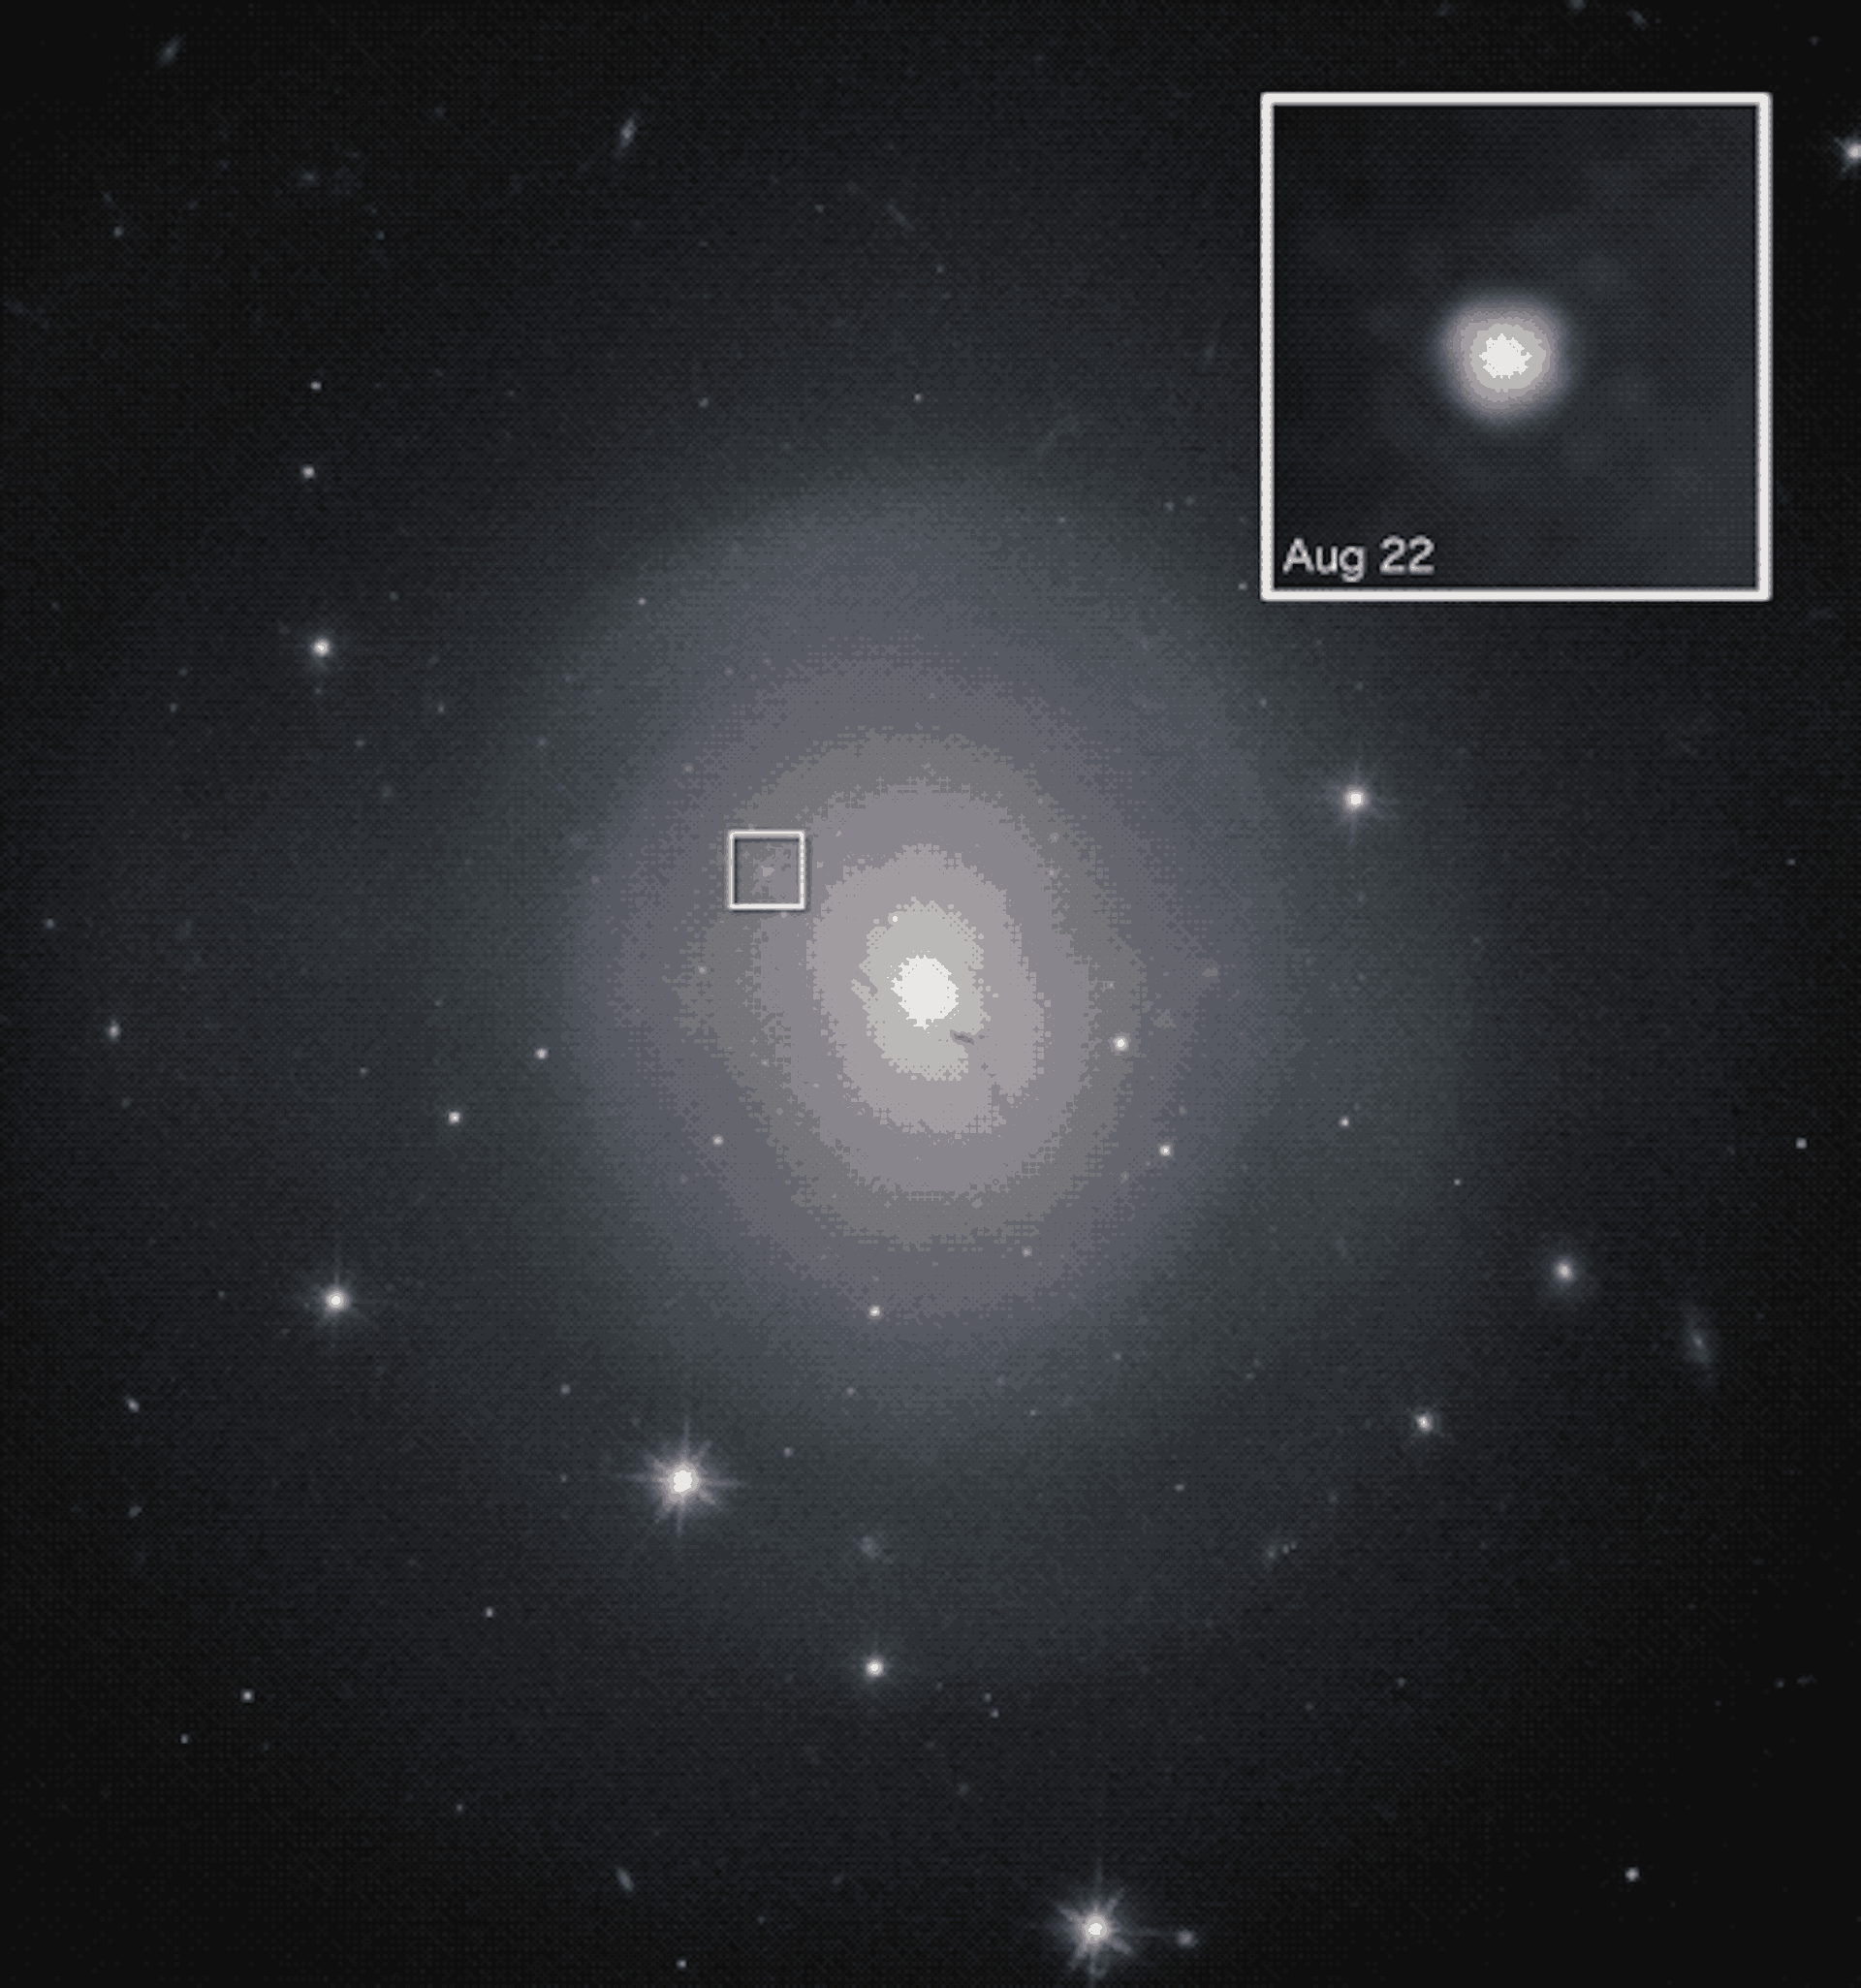 صورة GIF تعرض نجمًا ساطعًا على مدار أيام قليلة.